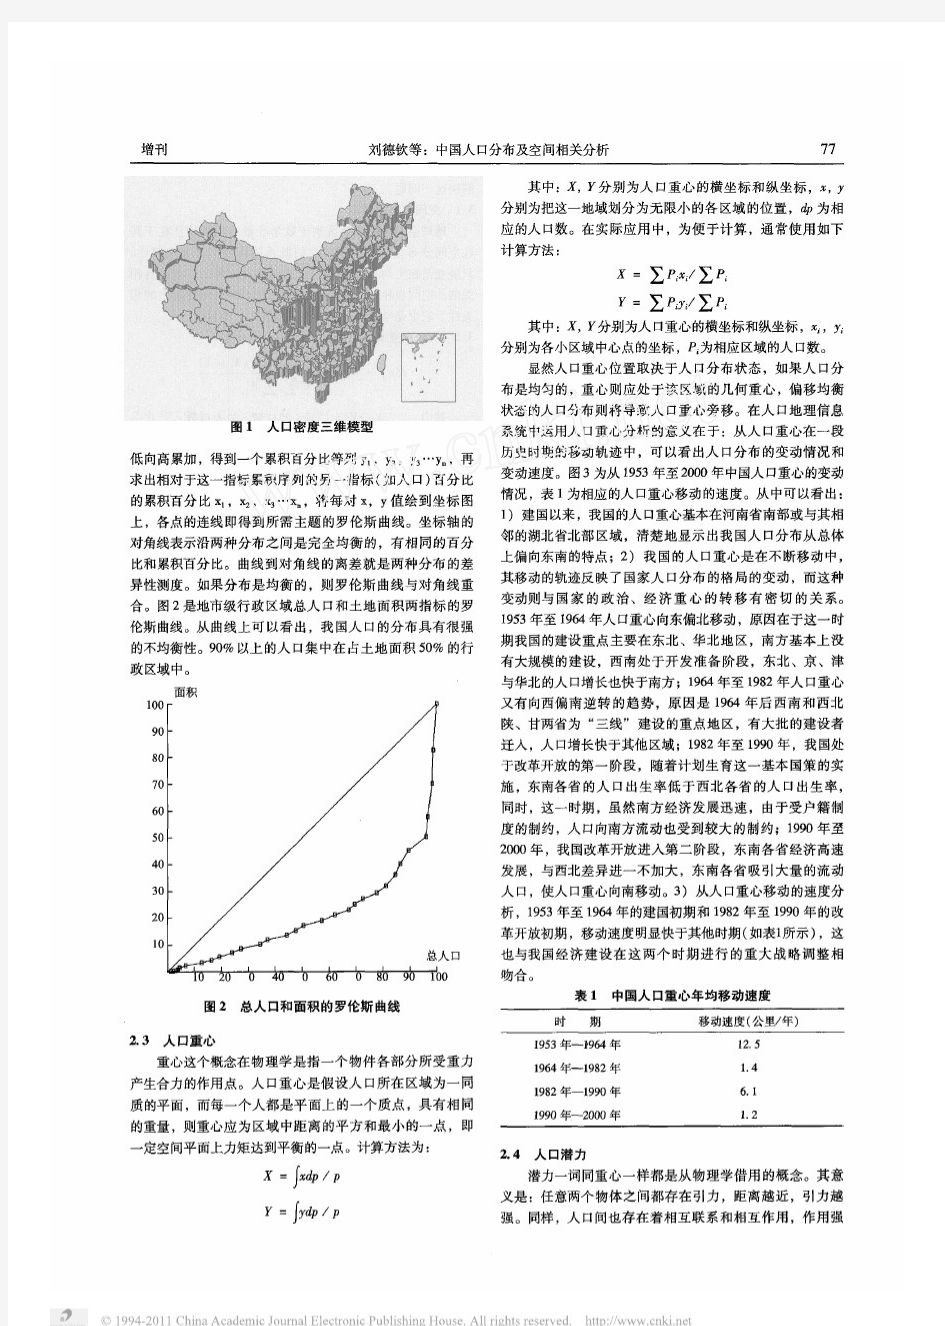 中国人口分布及空间相关分析